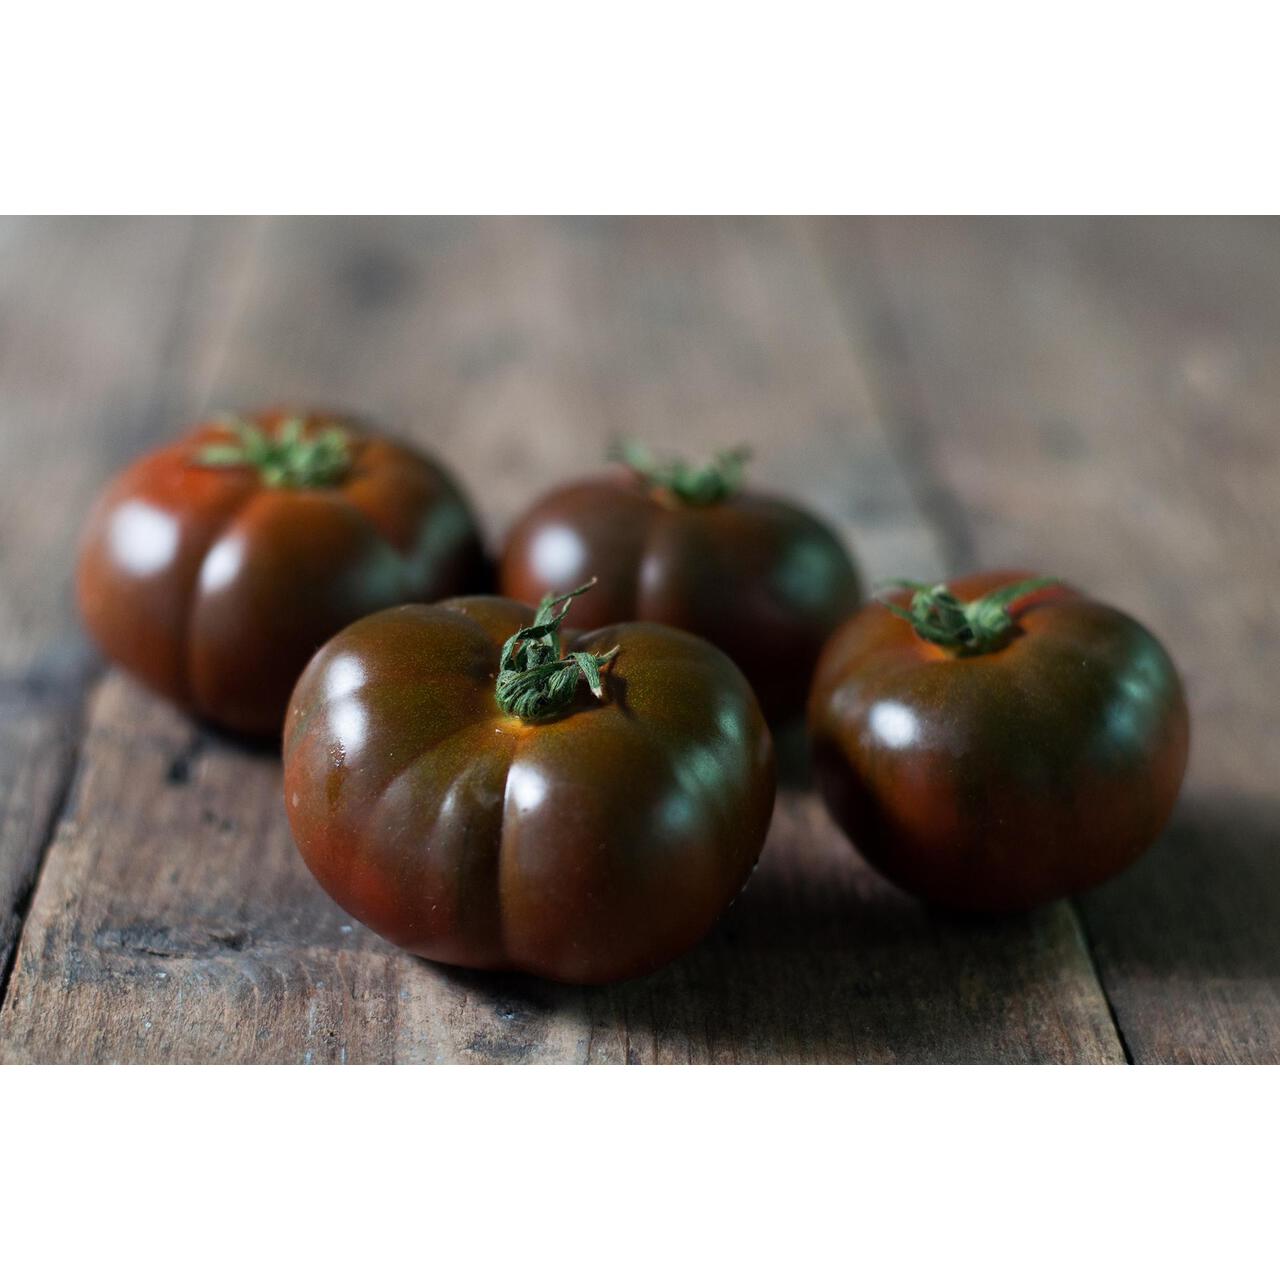 Natoora Spanish Black Iberiko Winter Tomatoes 300g